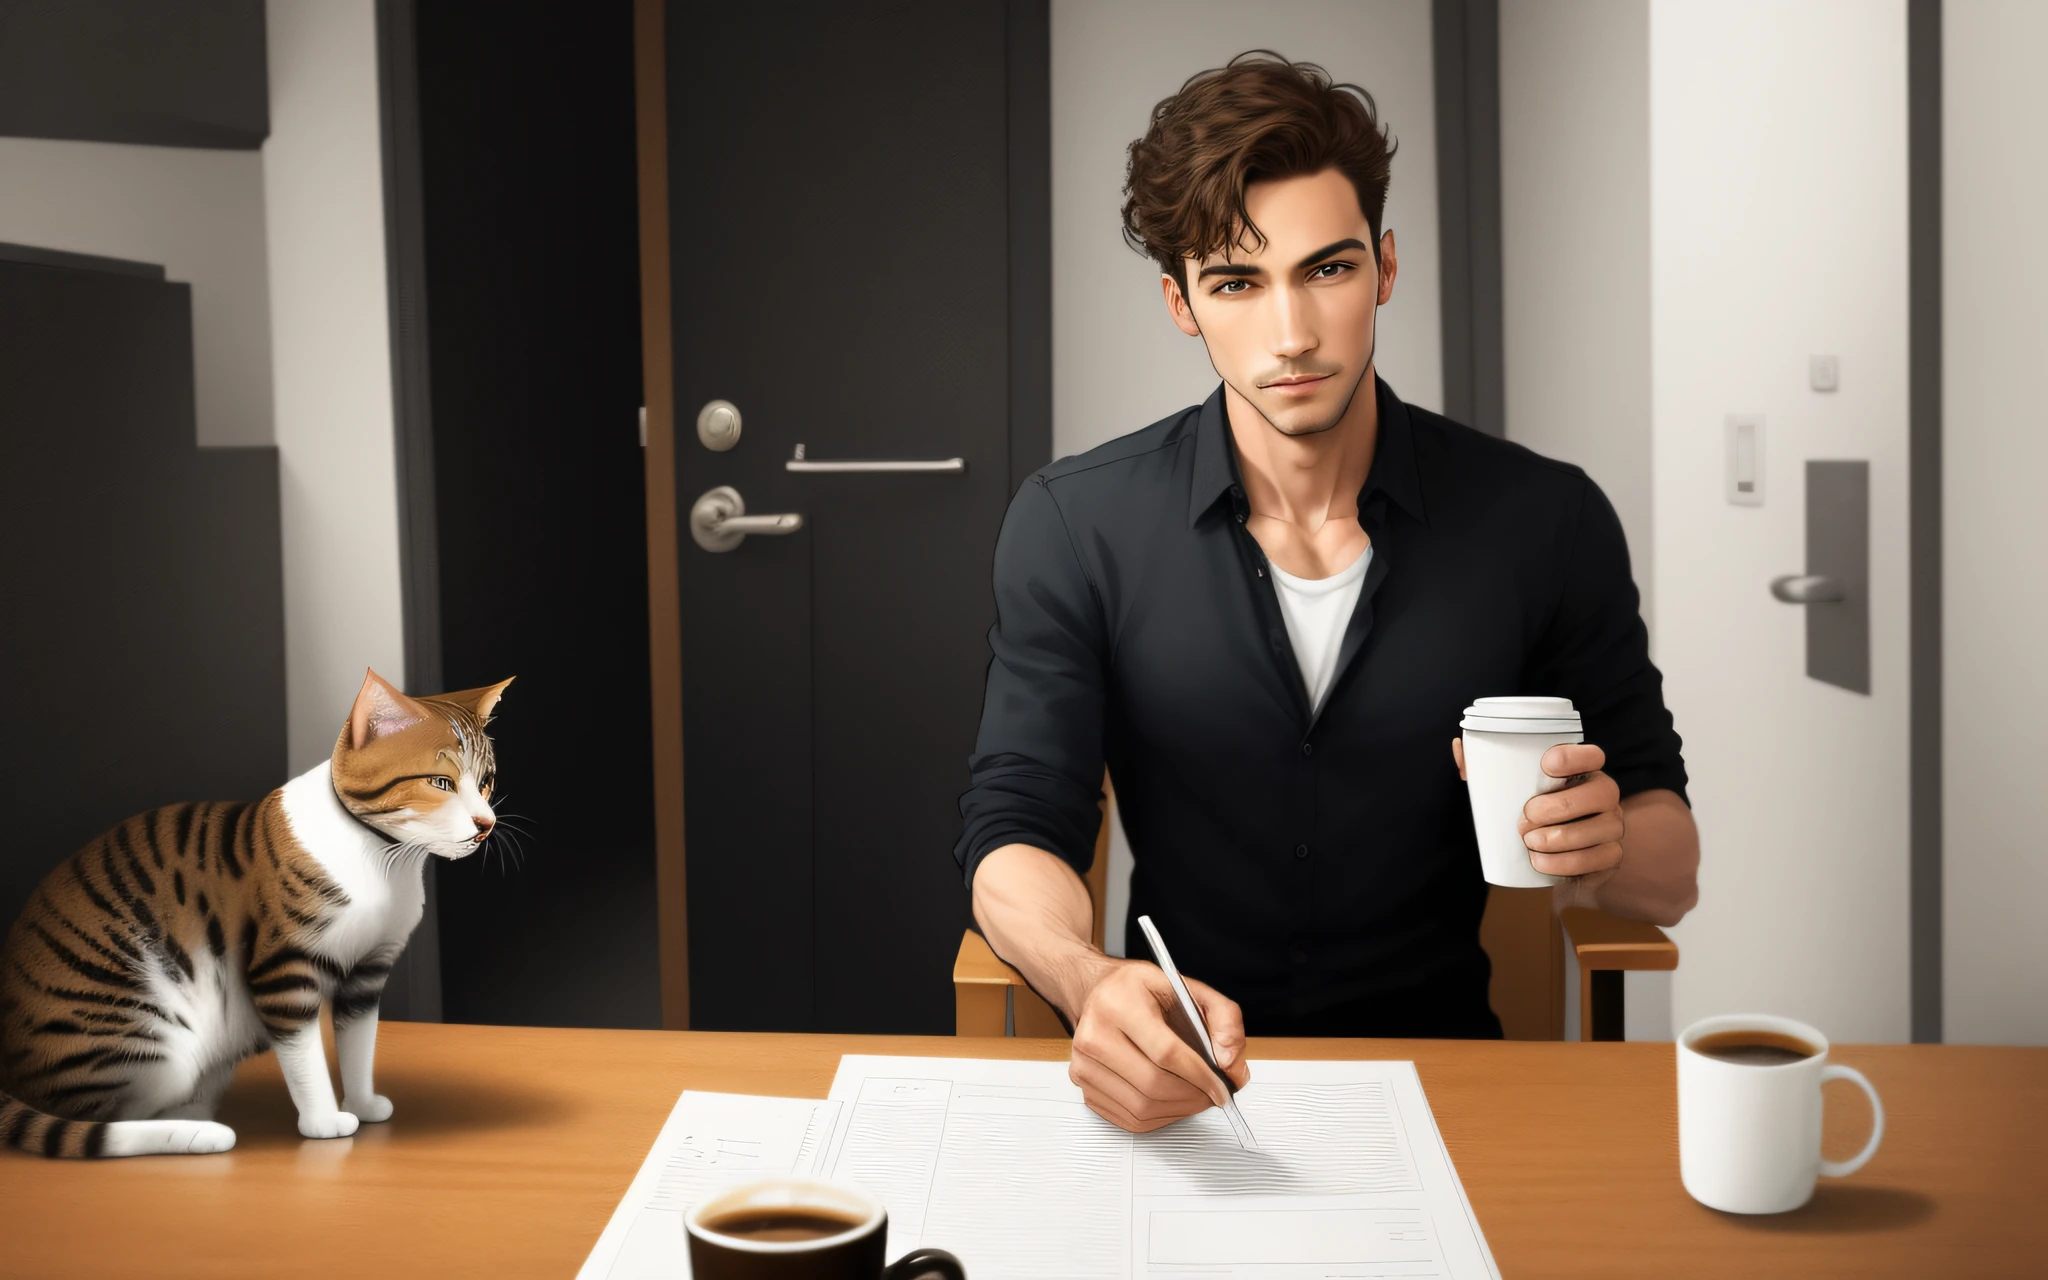 一个全身直立行走的人,  拿着一杯咖啡, 猫和人一起追随同一个方向, 卡通风格,  只是一个男人. 细致逼真的真实图像.